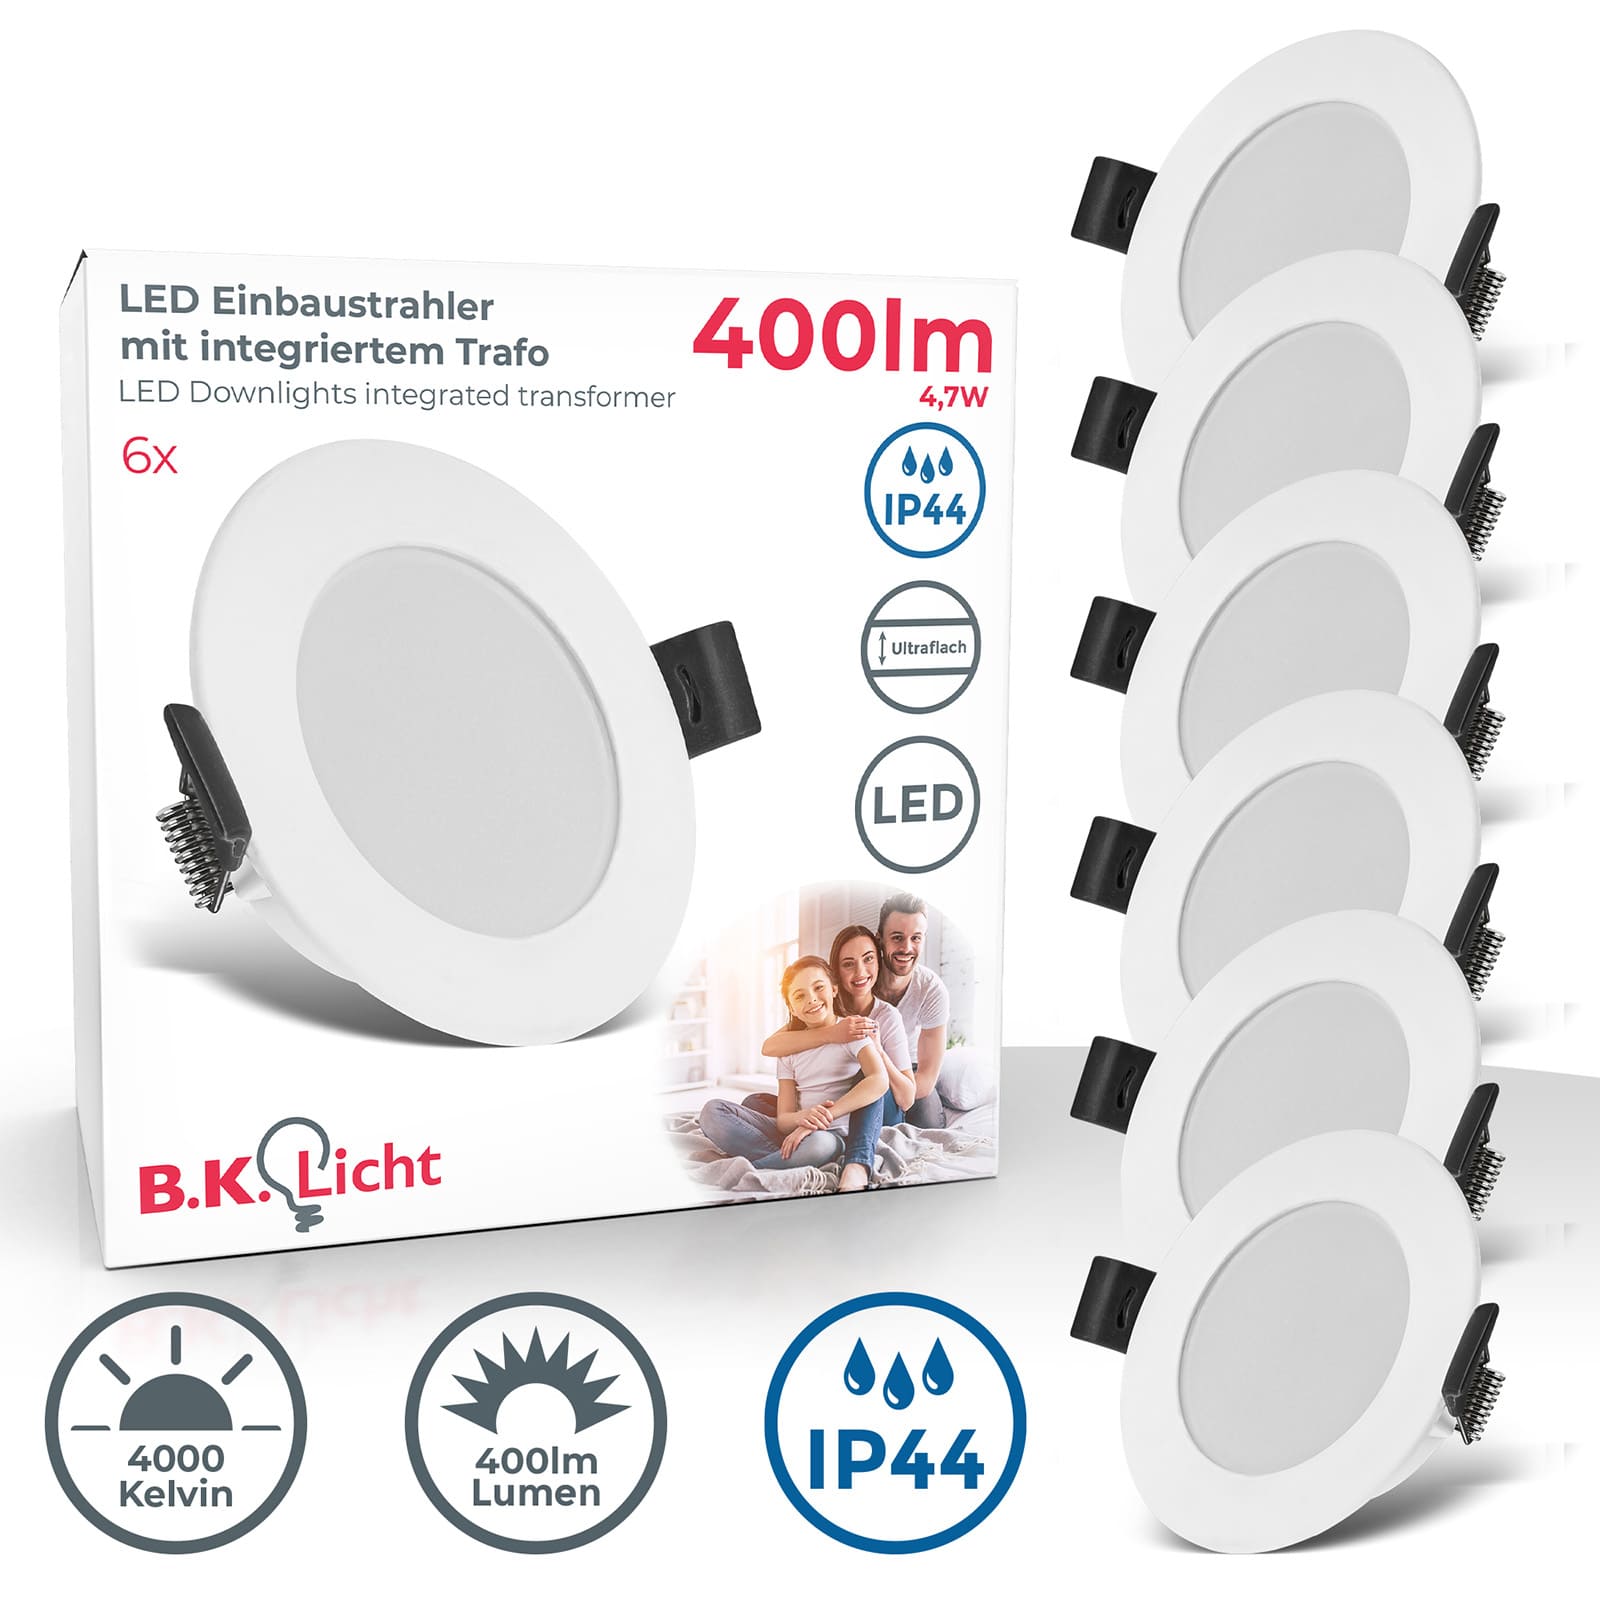 LED Bad-Einbaustrahler Ø85mm - 6er SET - Einbauleuchte ultra-flach 30mm IP44 Spritzwasserschutz 230V 4,7W 400lm warmweiß | Weiß  - 1